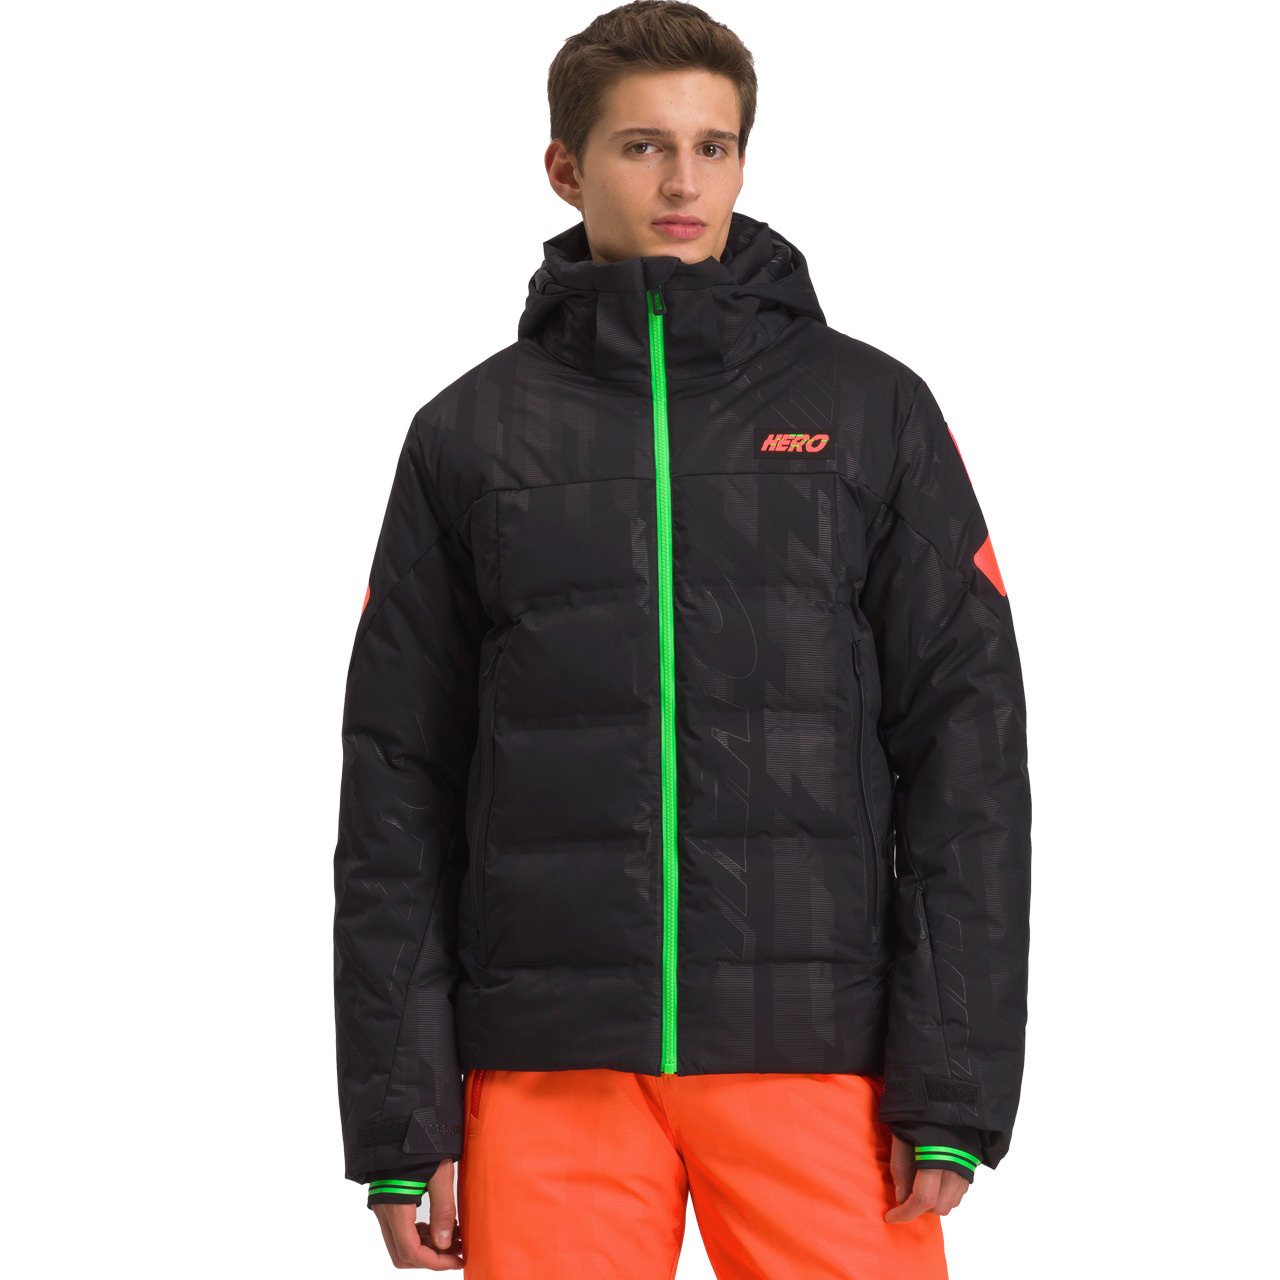 Rossignol Skiwear Herren Skijacke HERO DEPART black von Rossignol Skiwear